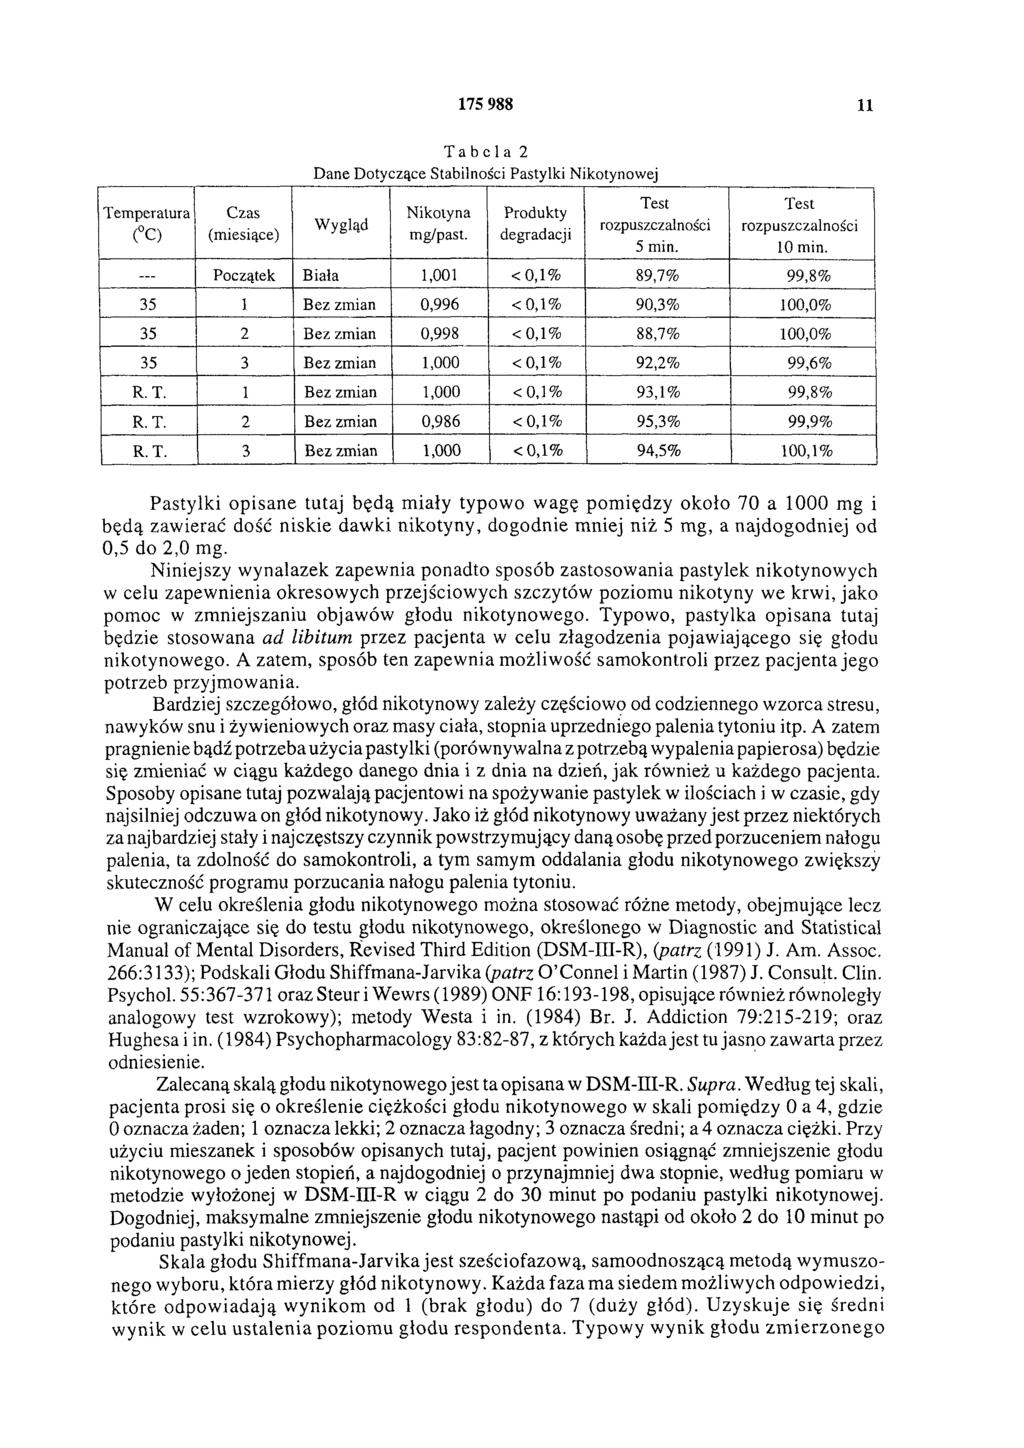 Temperatura ( C) Czas (miesiące) 175 988 11 Tabela 2 Dane Dotyczące Stabilności Pastylki Nikotynowej Wygląd Nikotyna mg/past. Produkty degradacji Test rozpuszczalności 5 min.